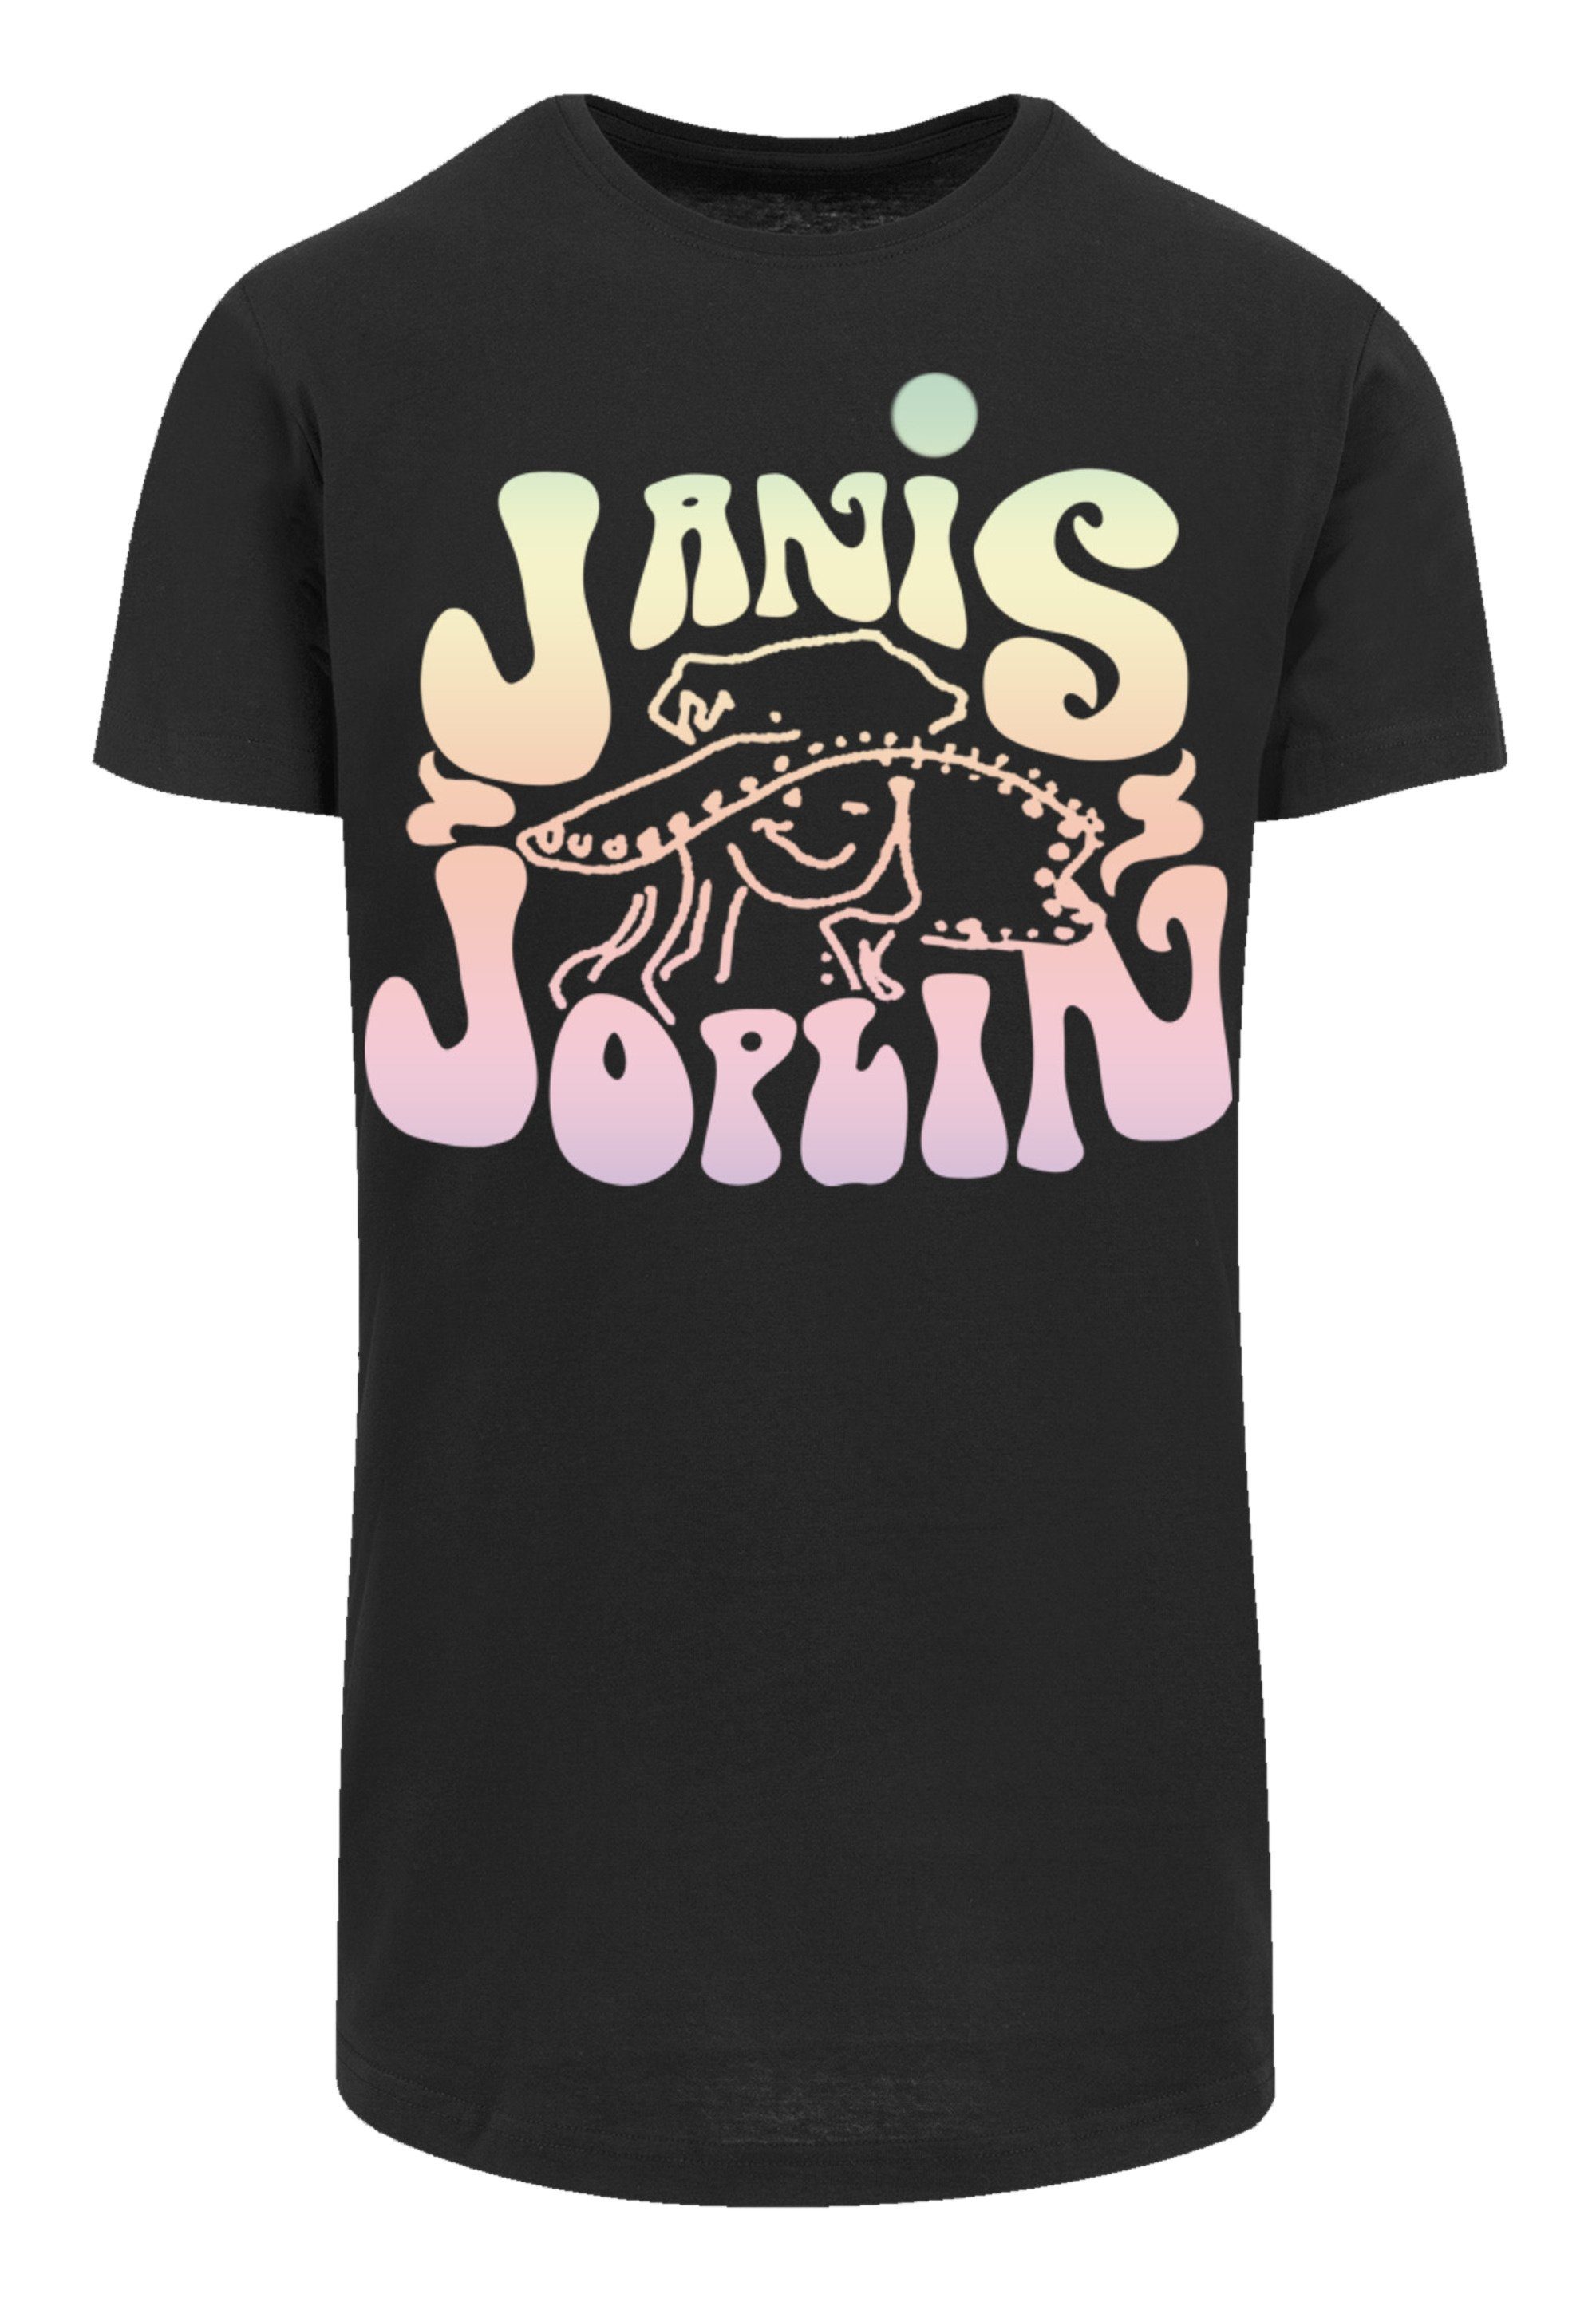 F4NT4STIC T-Shirt PLUS Pastel cm Das trägt SIZE und Model Print, Größe Janis ist 180 Logo Joplin groß M